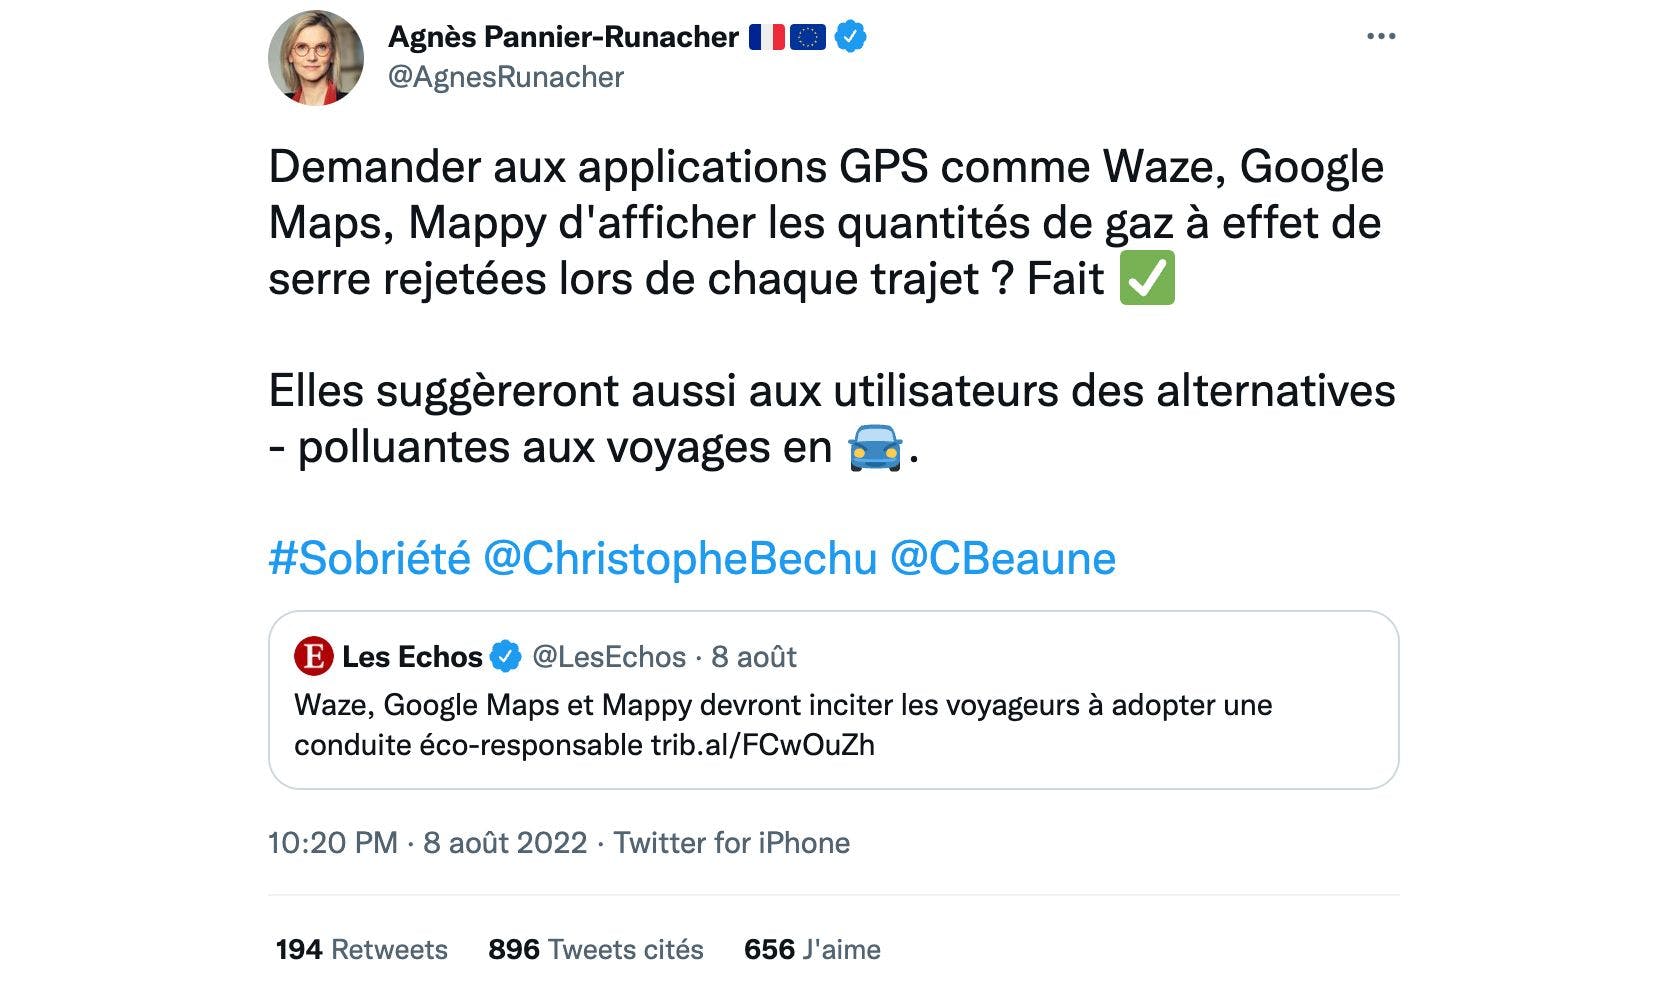 Tweet d'Agnès Pannier-Runacher, Ministre de la Transition énergétique